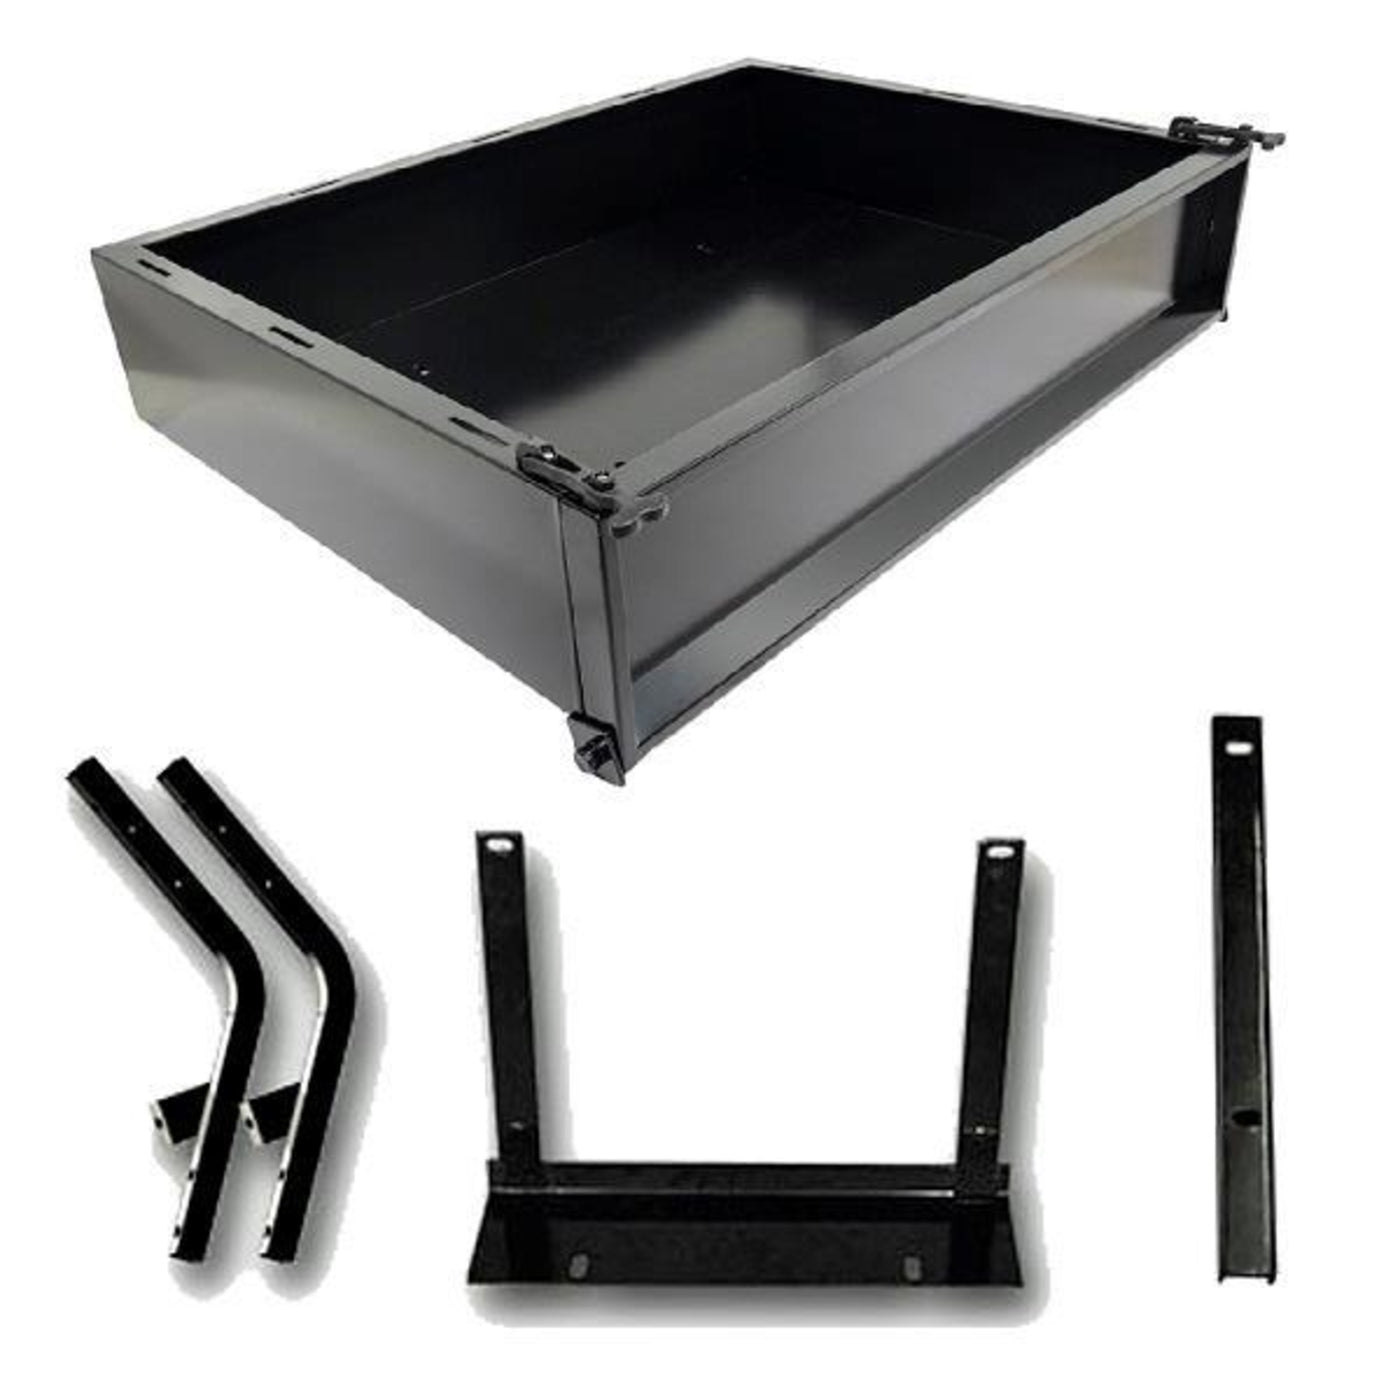 GTW¬Æ Black Steel Cargo Box Kit For Yamaha (Models G14-G22)